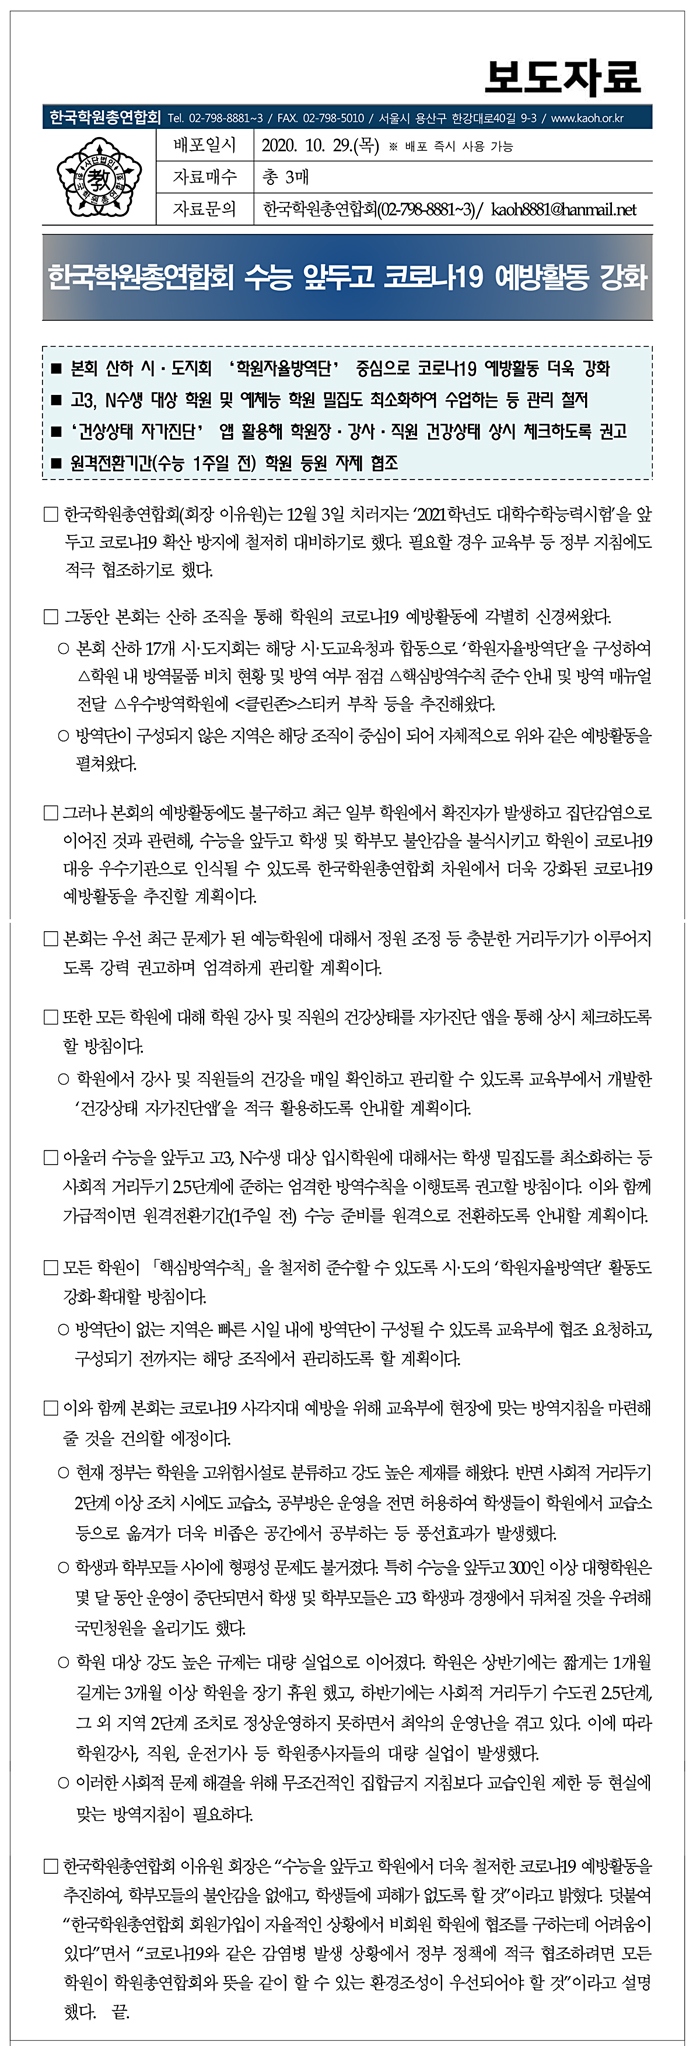 보도자료_수능앞두고 코로나19 예방활동 강화_최종 2020.10.29.jpg